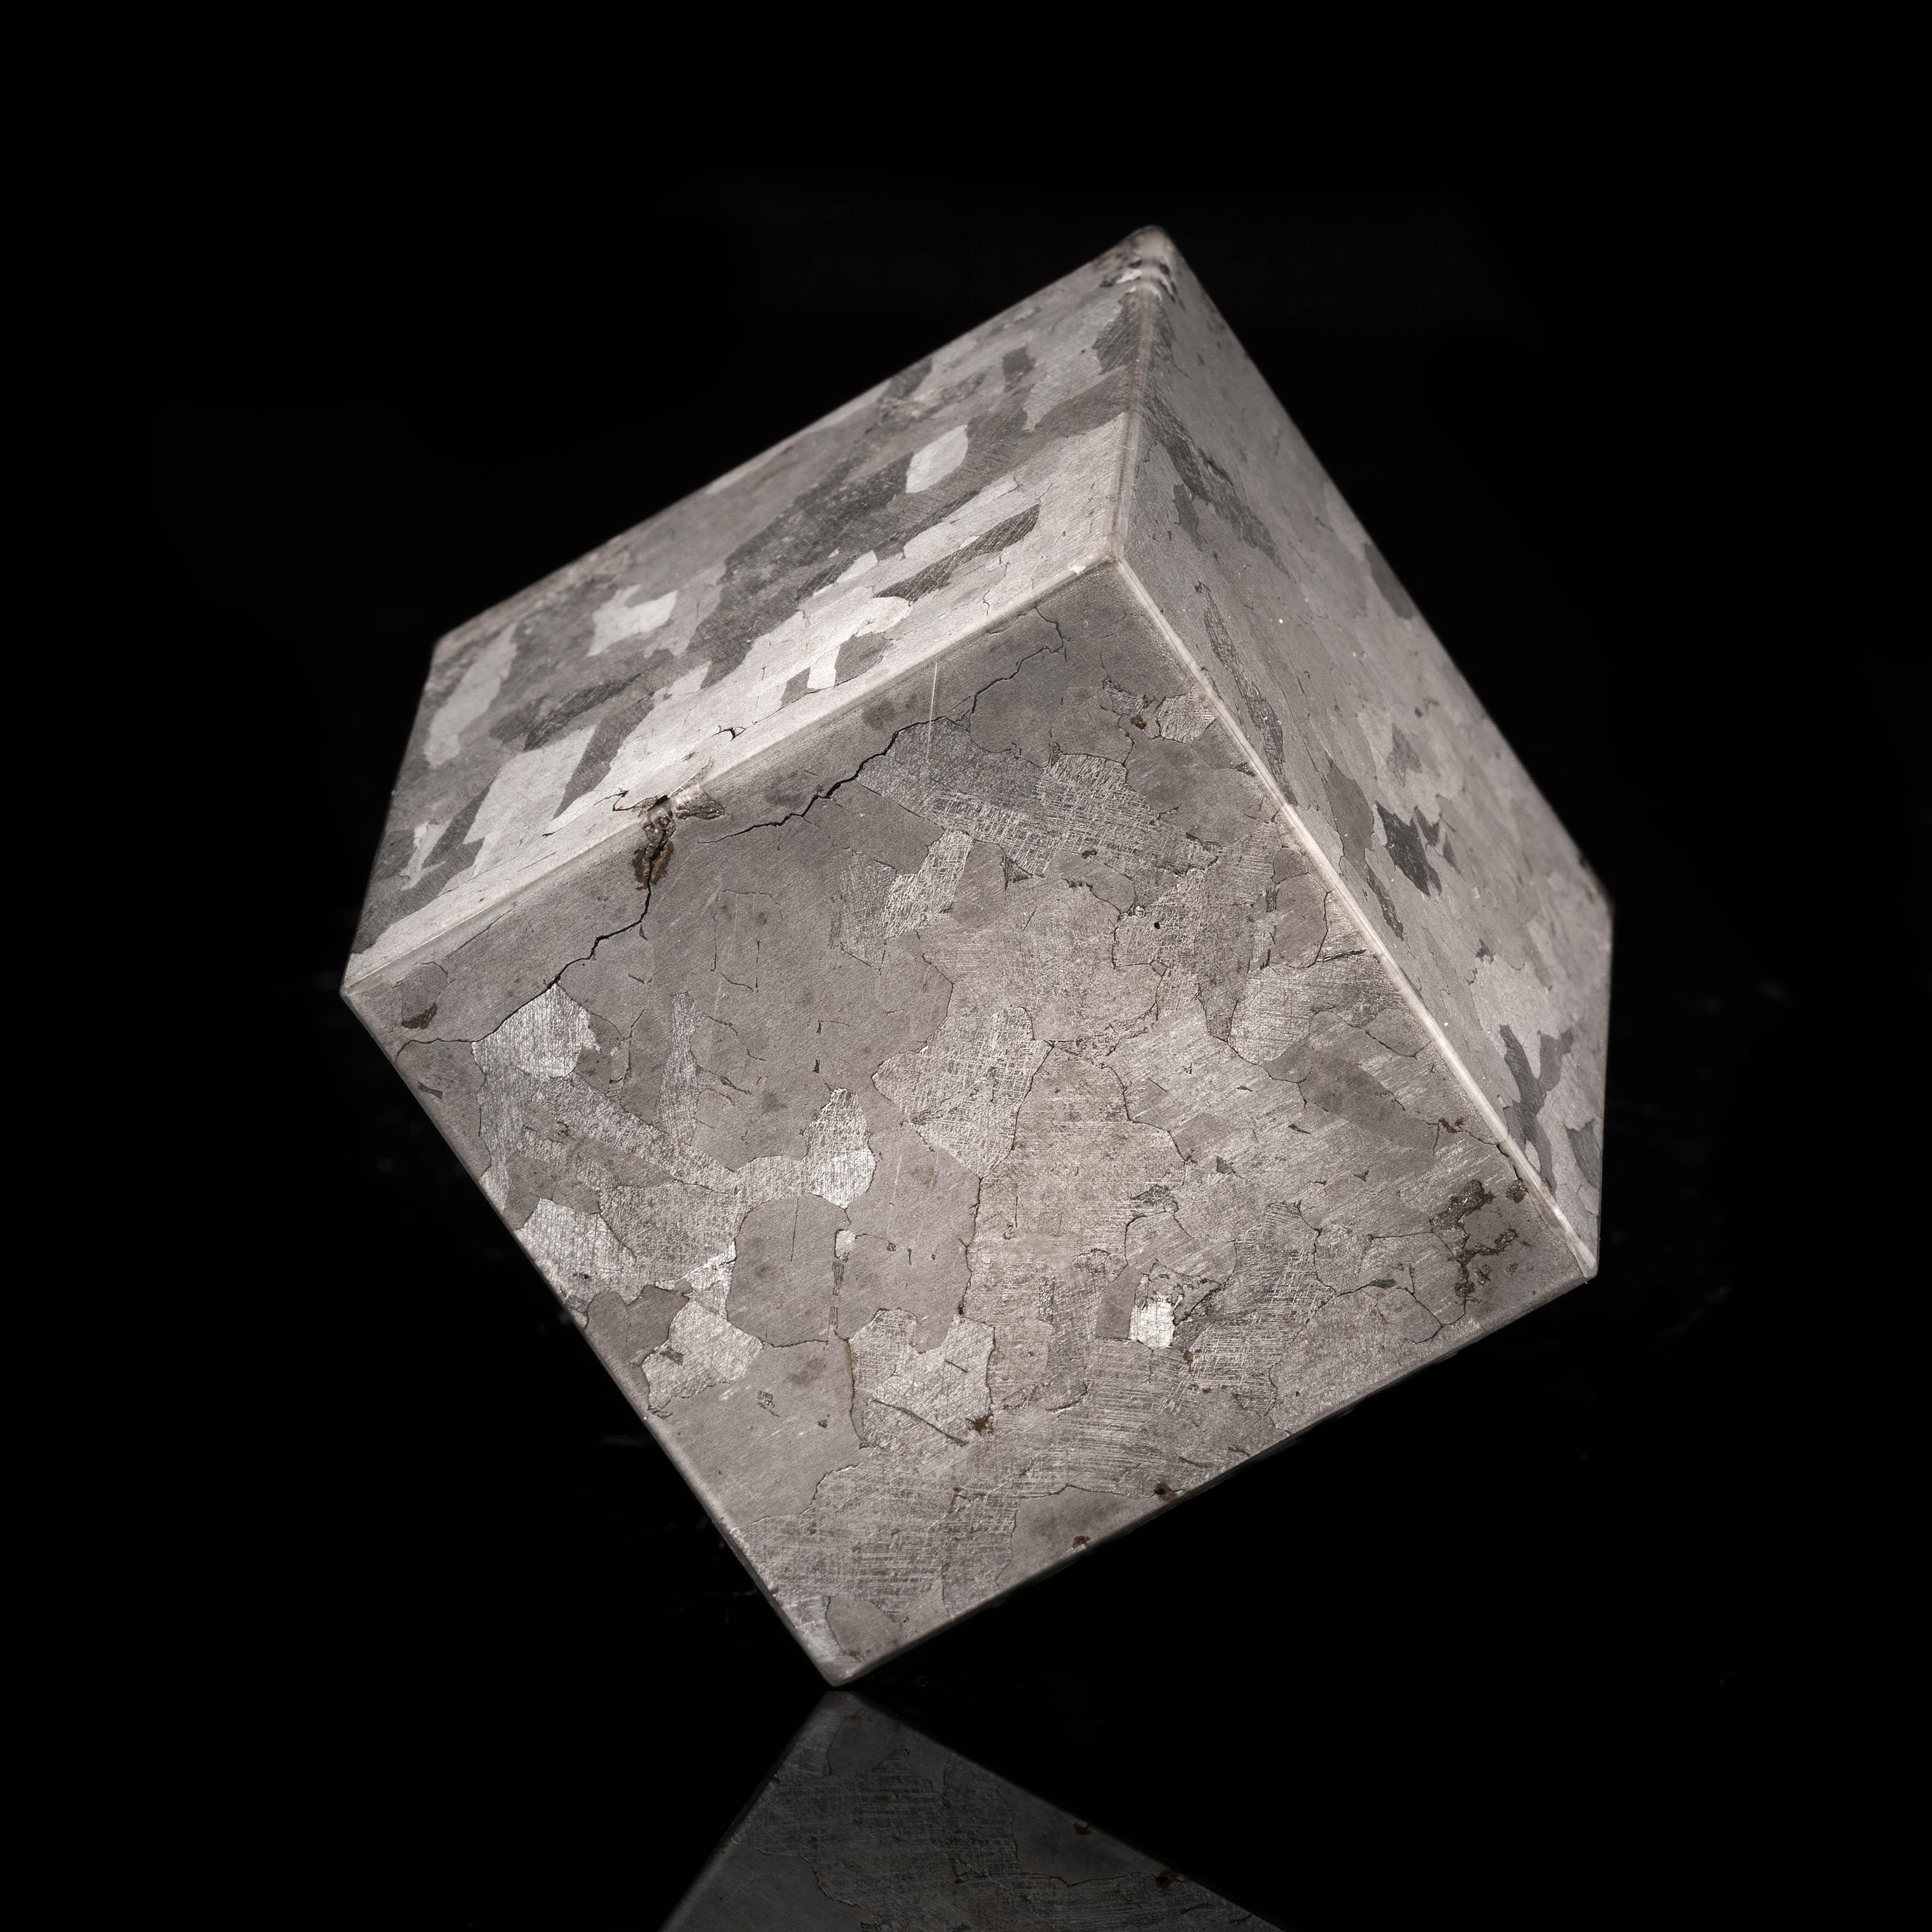 Iron Genuine 2.23 Lb. Campo del Cielo Meteorite Cube // 4.6 Billion Years Old